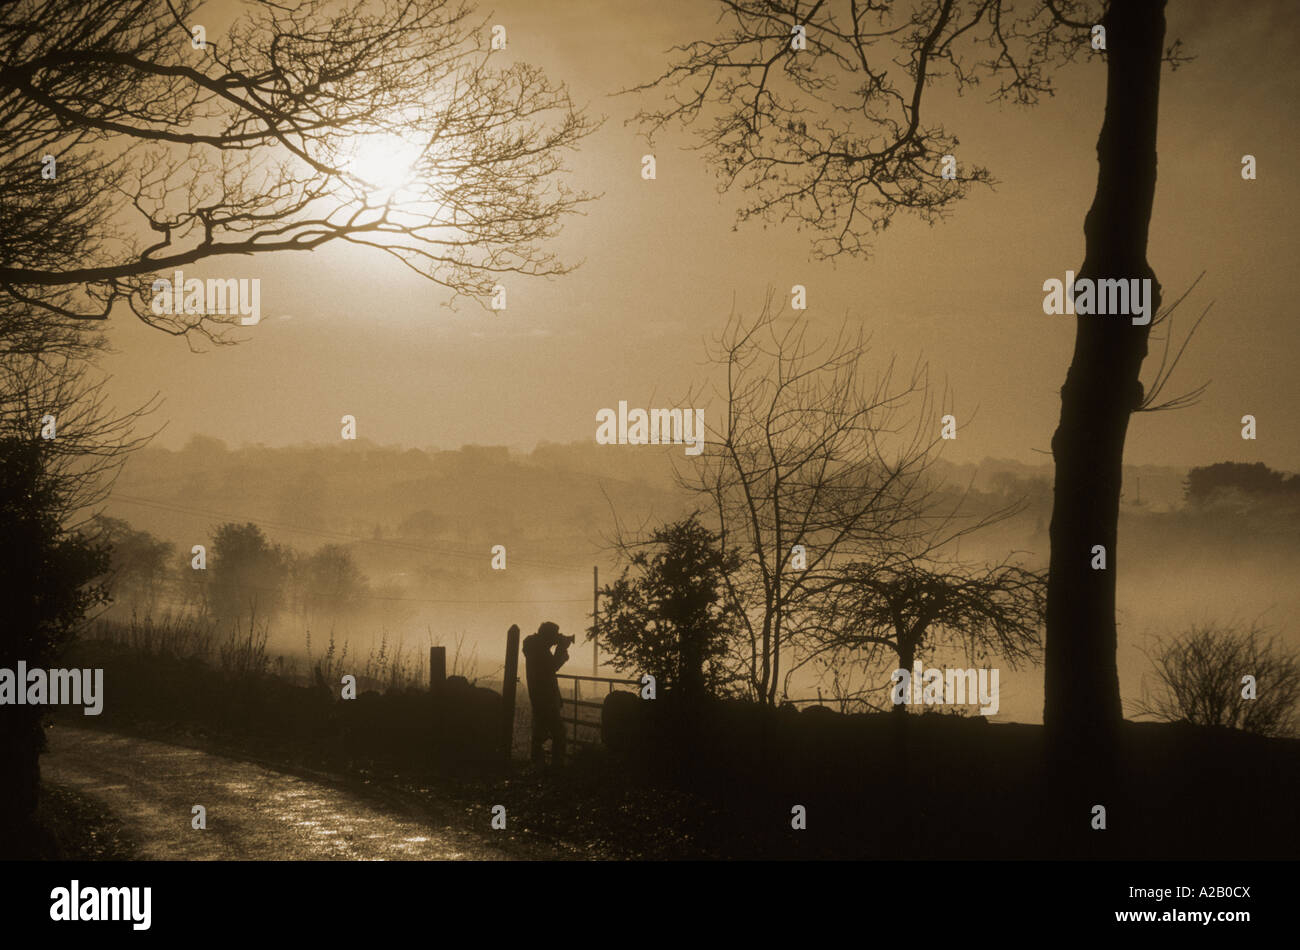 Silhouette d'un photographe, la prise de photos, d'un paysage brumeux Staffordshire. Banque D'Images